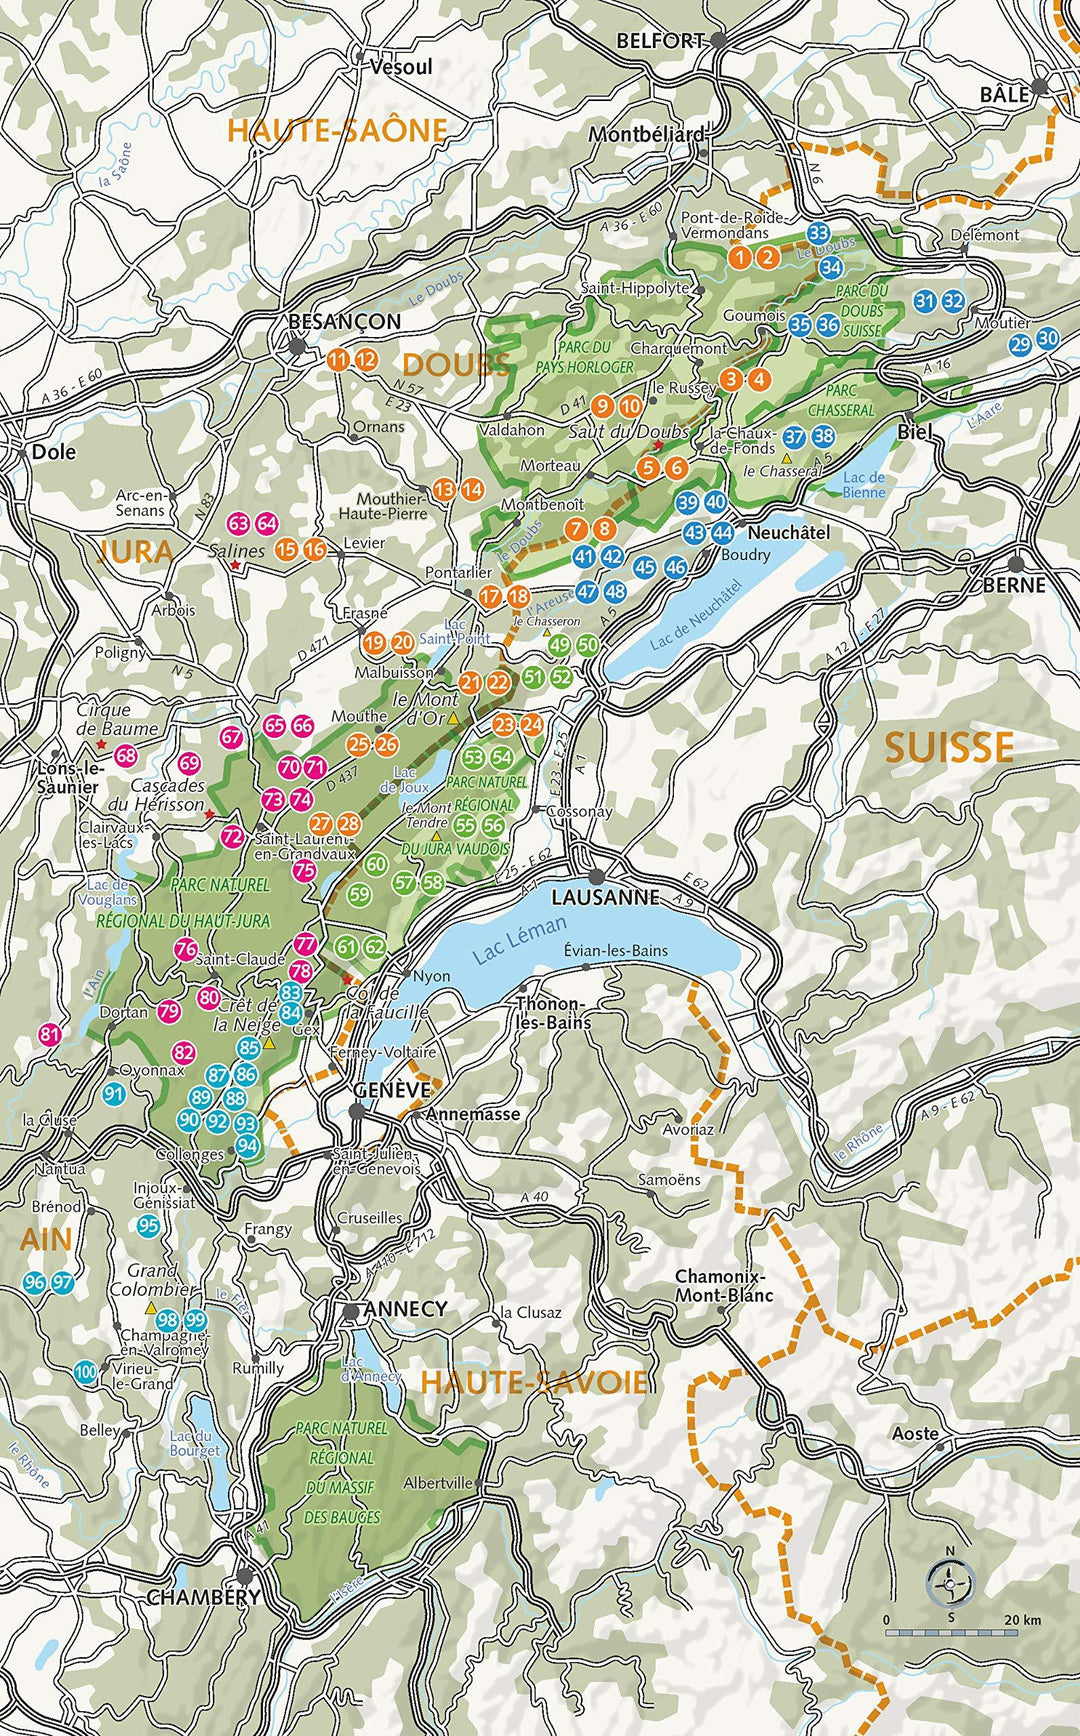 Guide de randonnées - Montagnes du Jura, les plus belles randonnées | Glénat guide de randonnée Glénat 